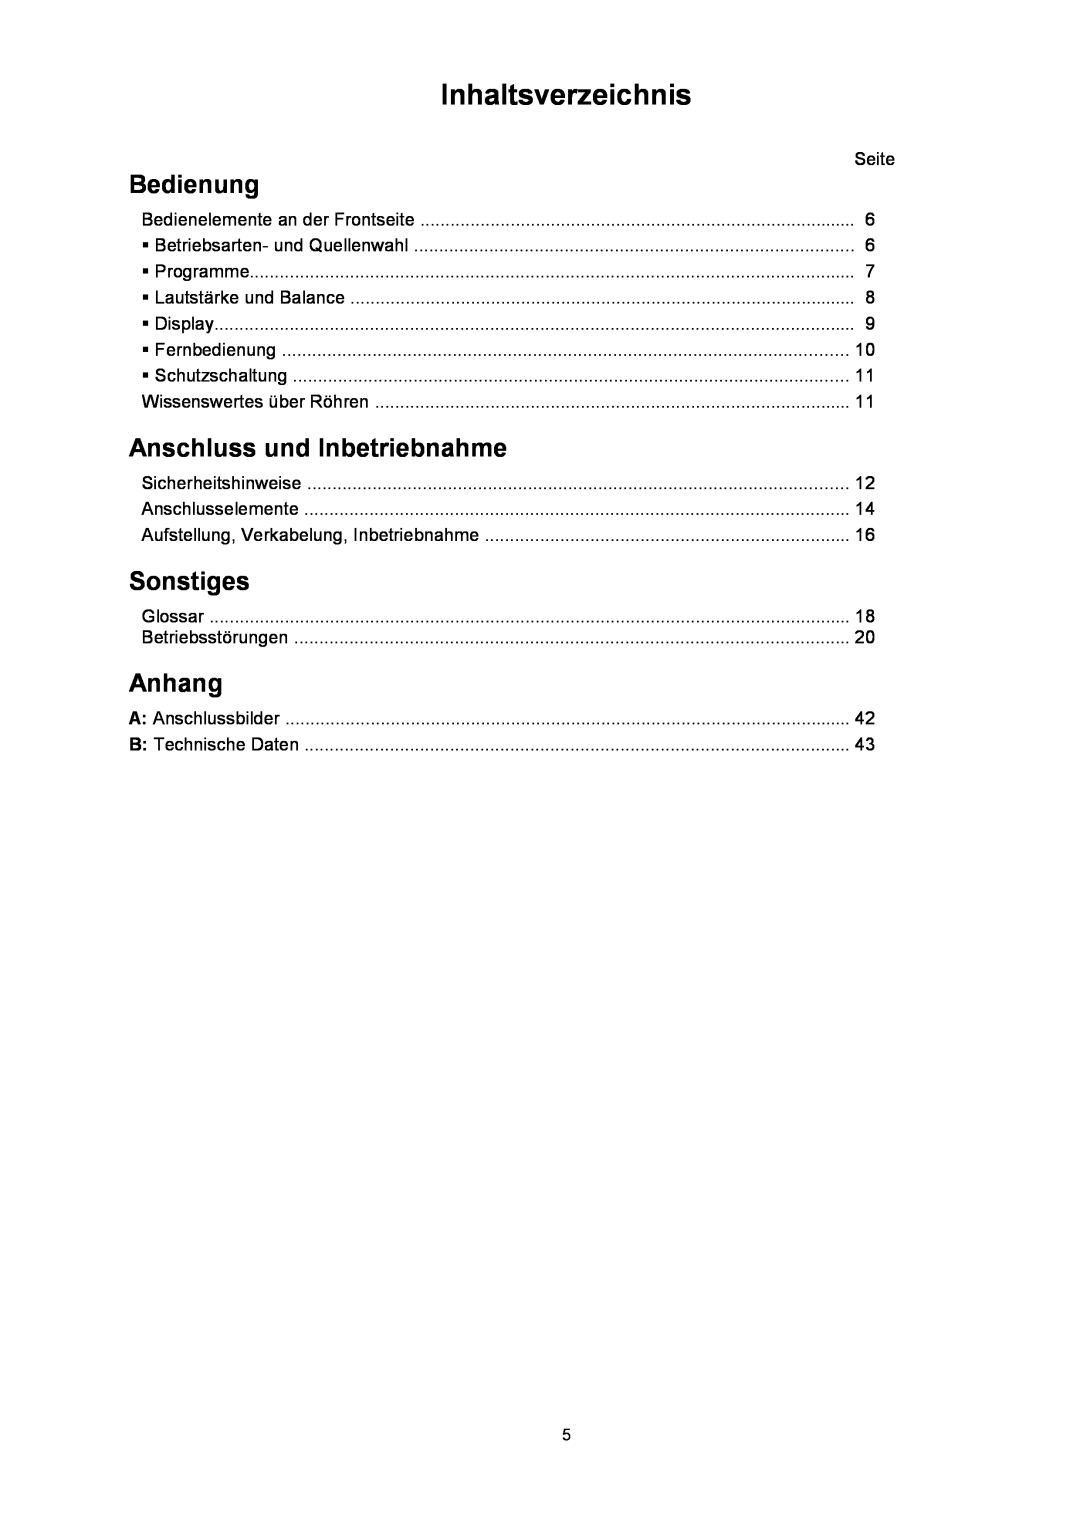 T+A Elektroakustik P 10 user manual Inhaltsverzeichnis, Bedienung, AnschlussundInbetriebnahme, Sonstiges, Anhang 